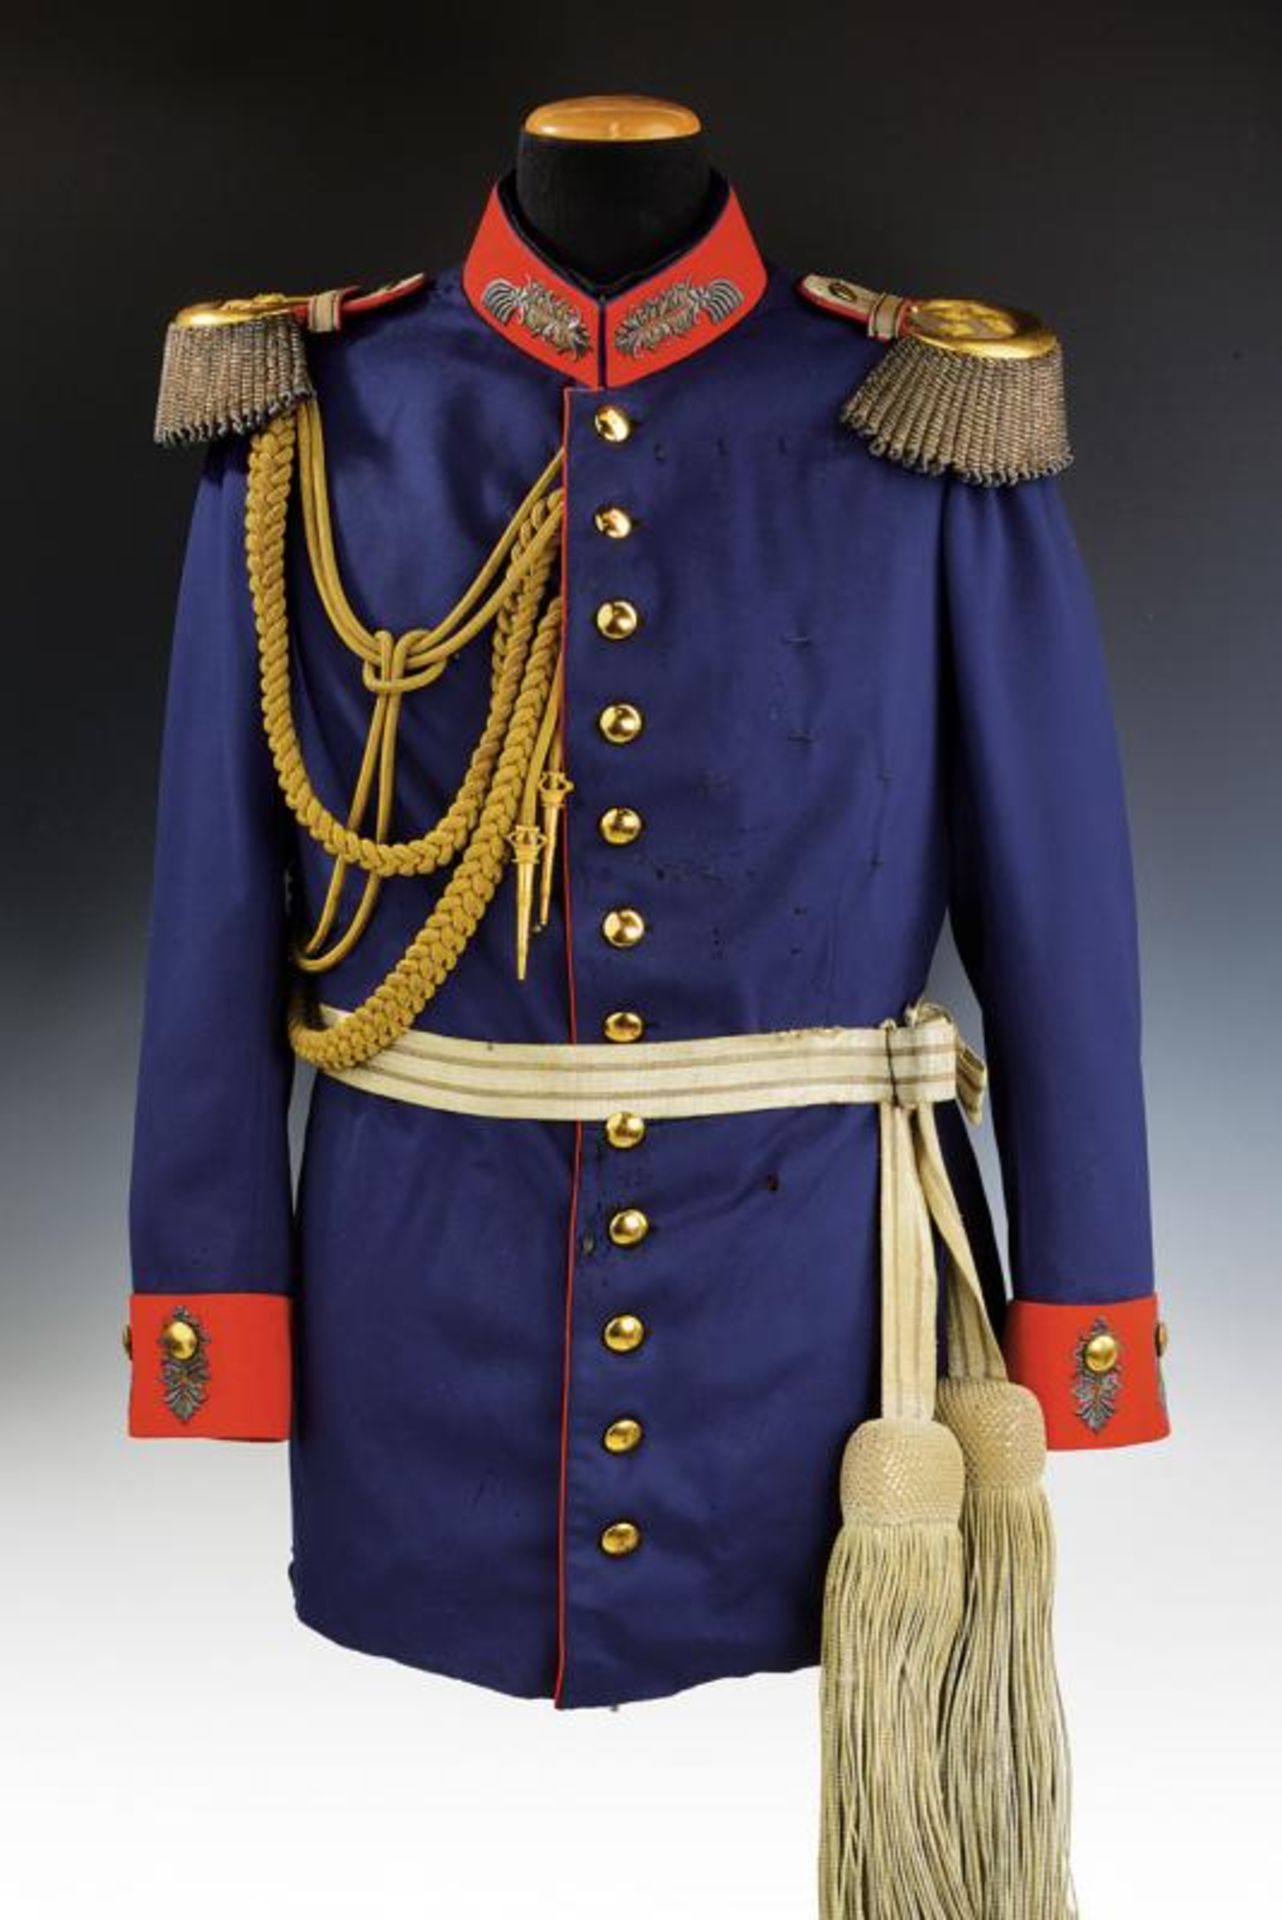 A general's uniform